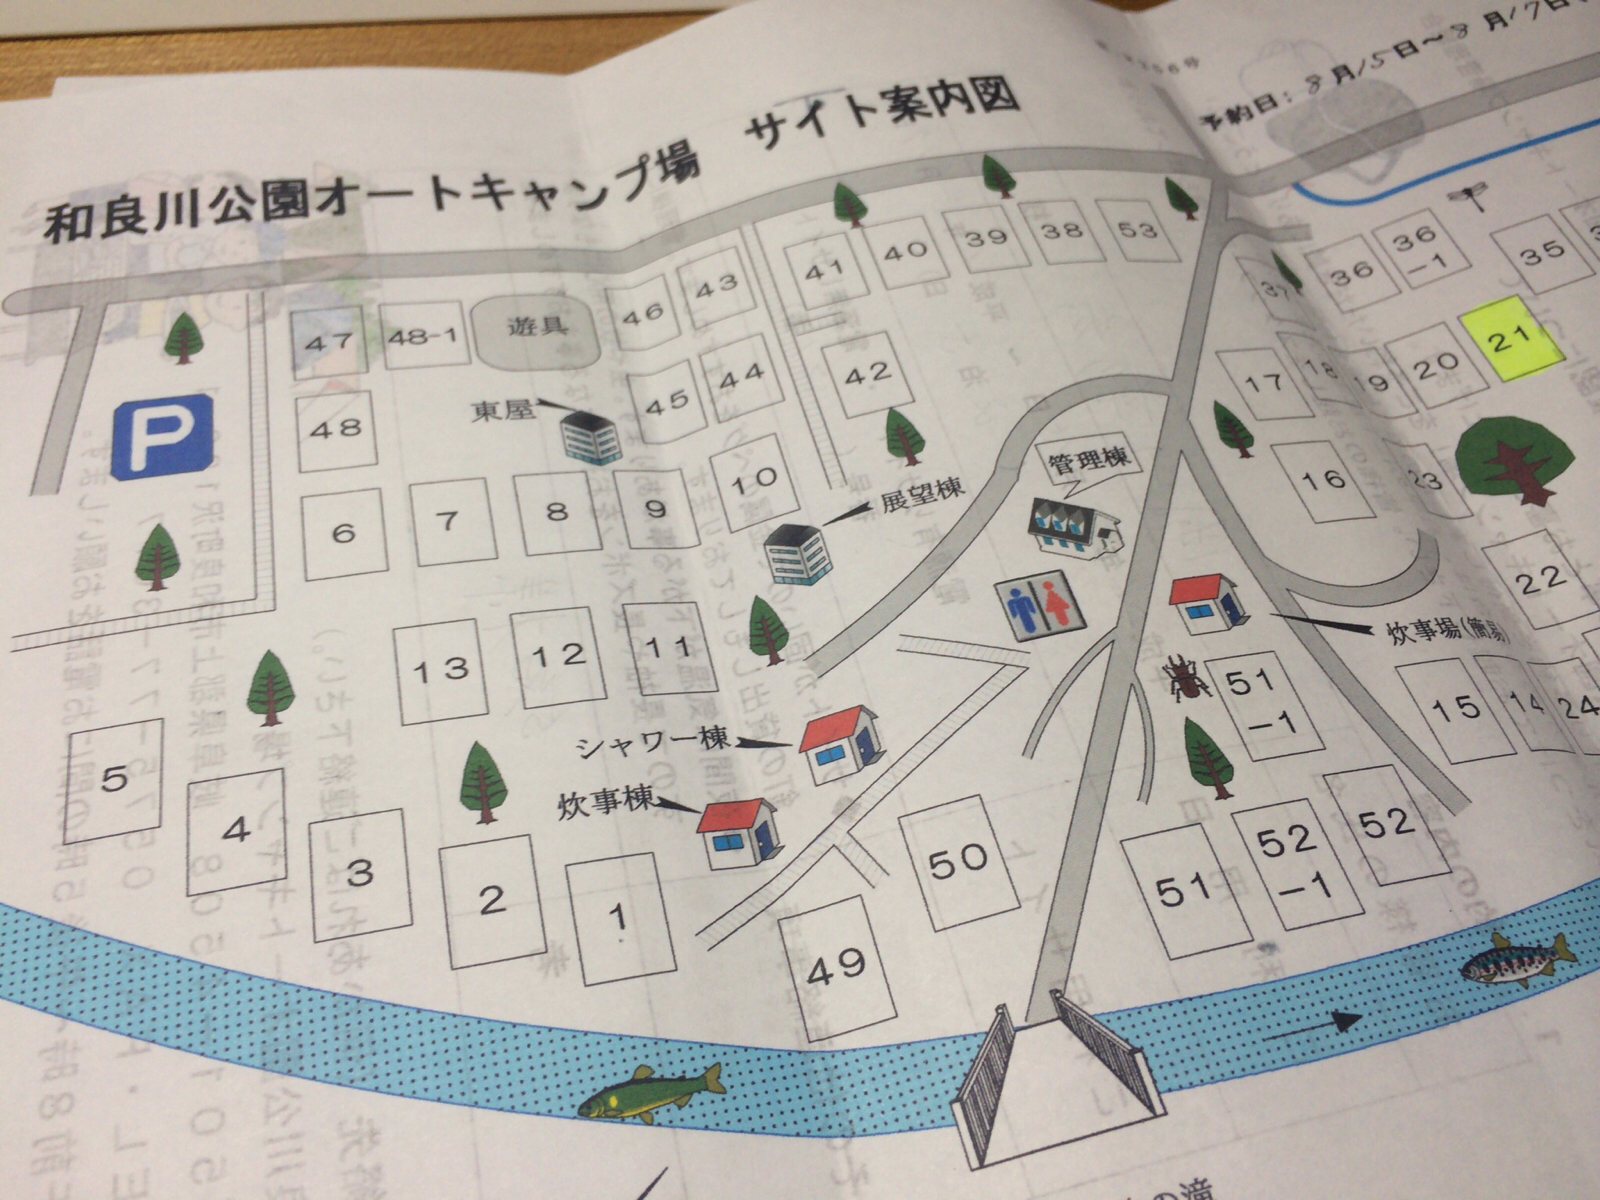 明日は！和良川公園オートキャンプ場。久々のファミキャンだが。。。